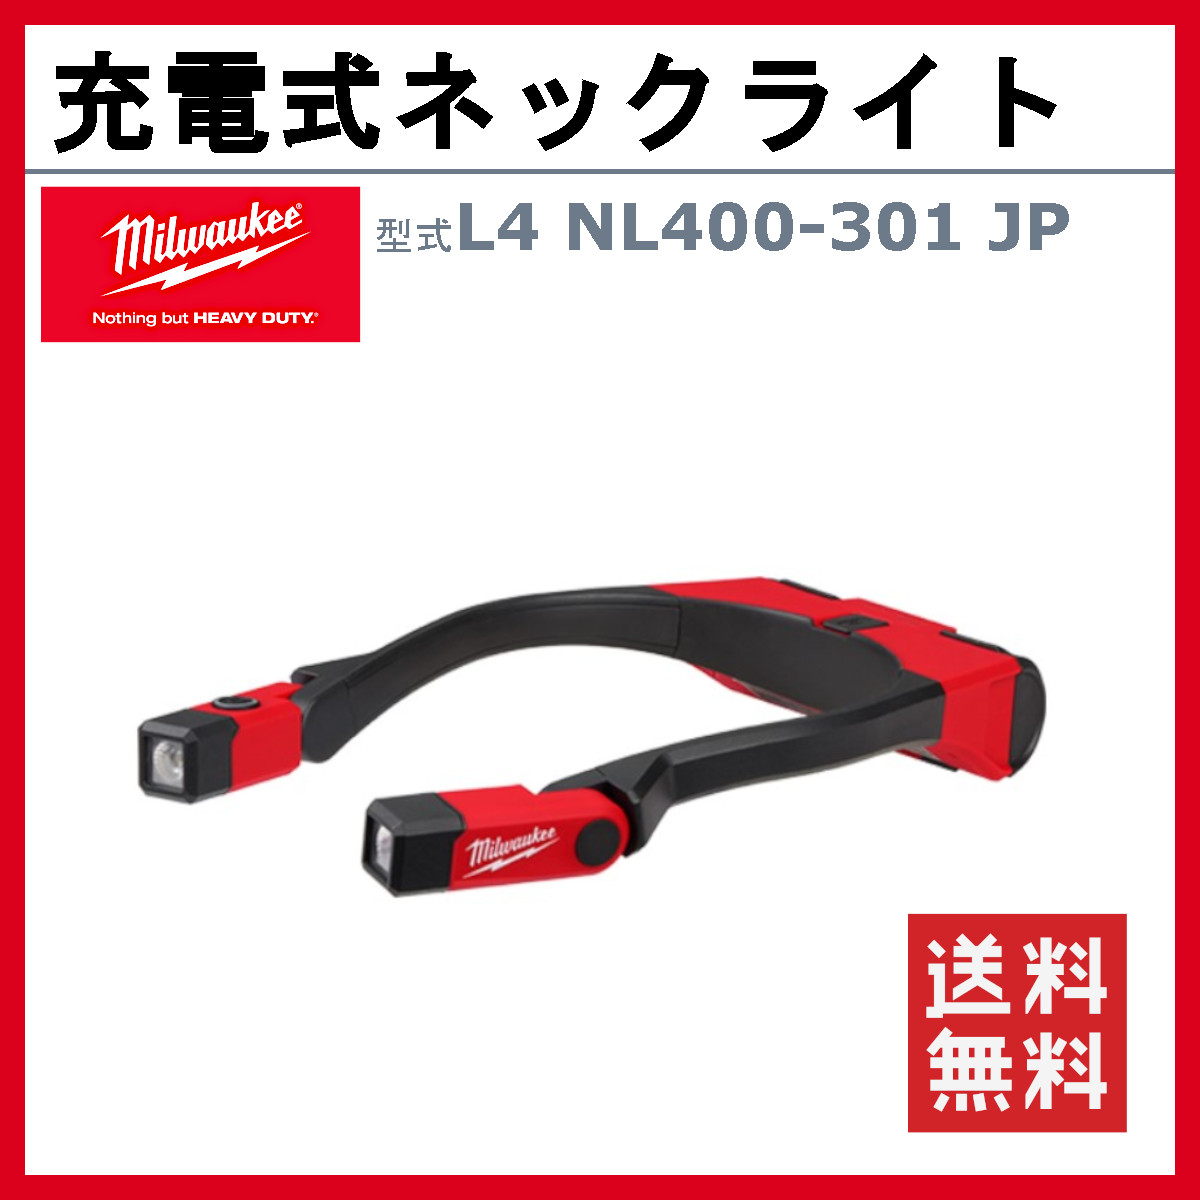 ミルウォーキー 充電式ネックライト L4NL400-301JP LEDライト USB USB 